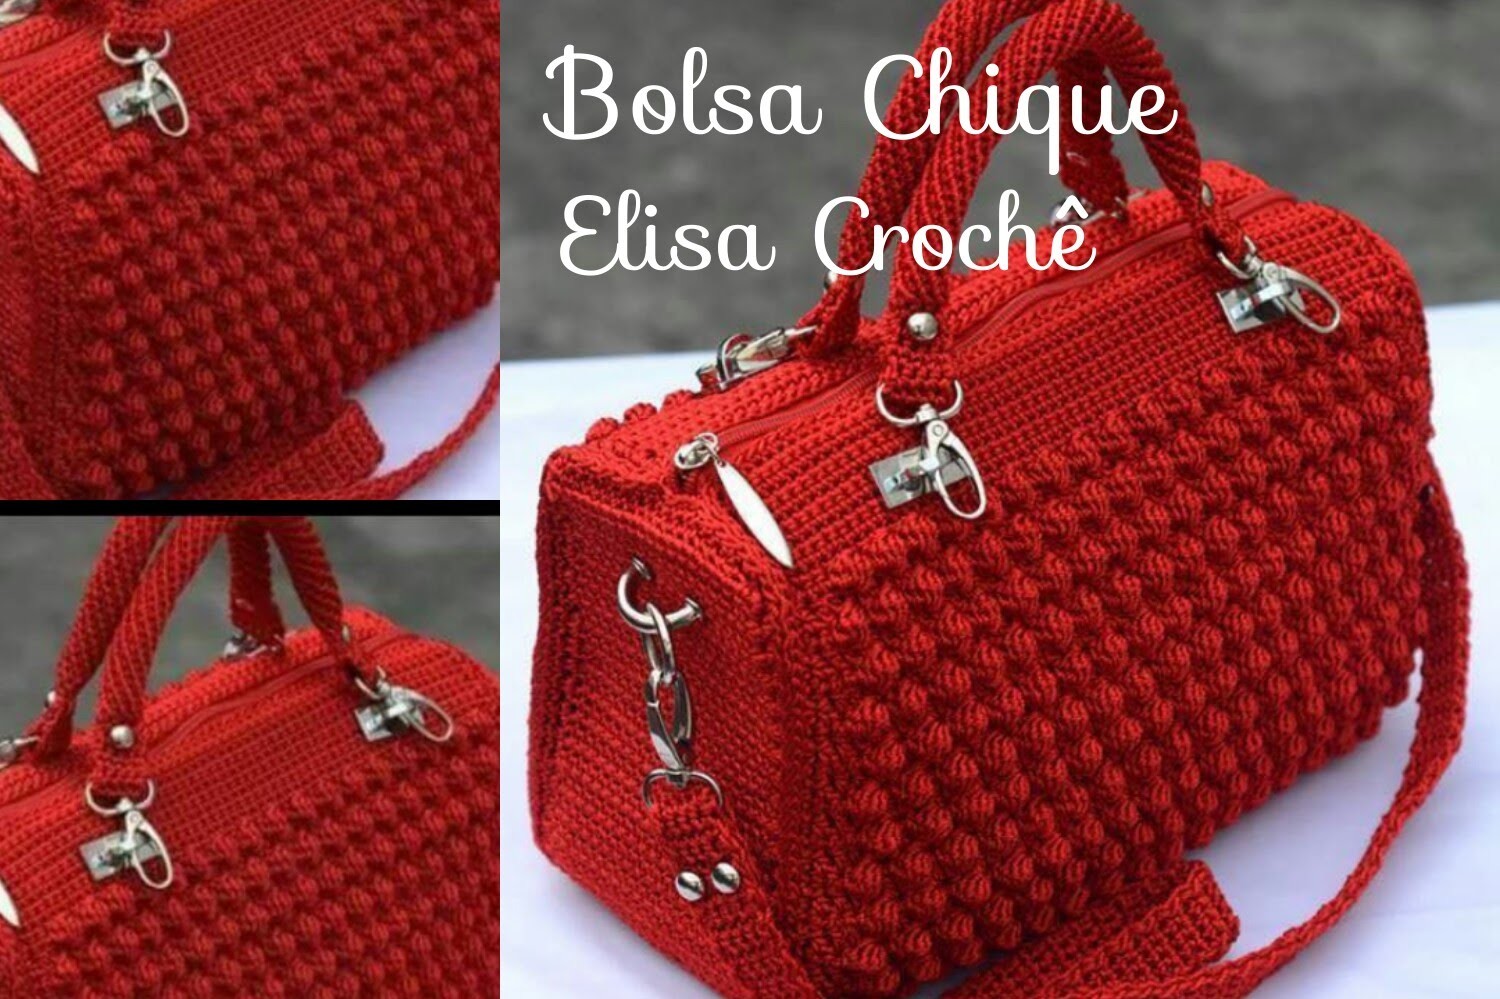 Versão destros : Bolsa chique em crochê ( 1ª parte ) # Elisa Crochê